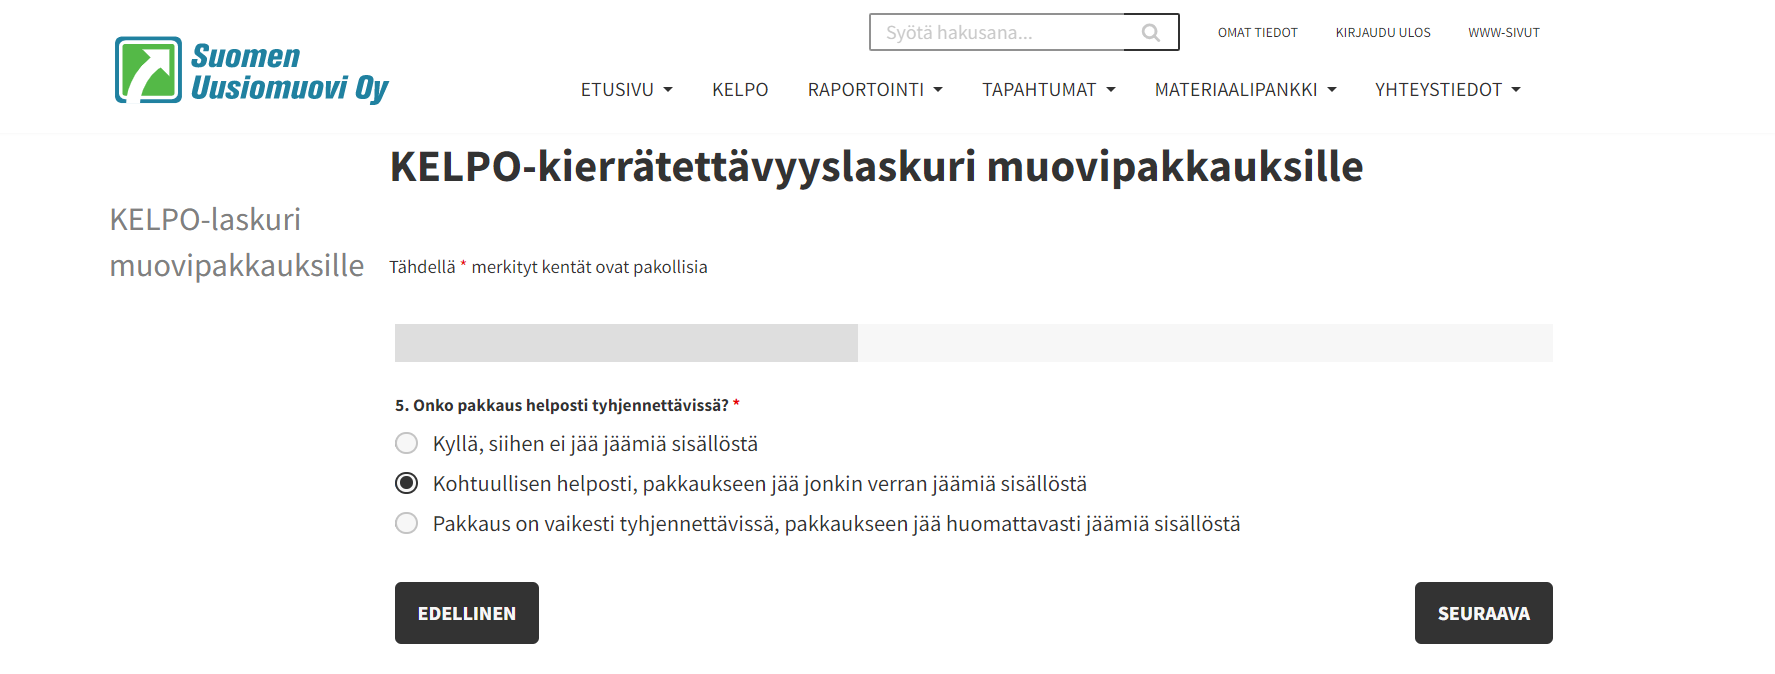 Kierrätettävyyslaskuri WordPressillä Suomen Uusiomuoville